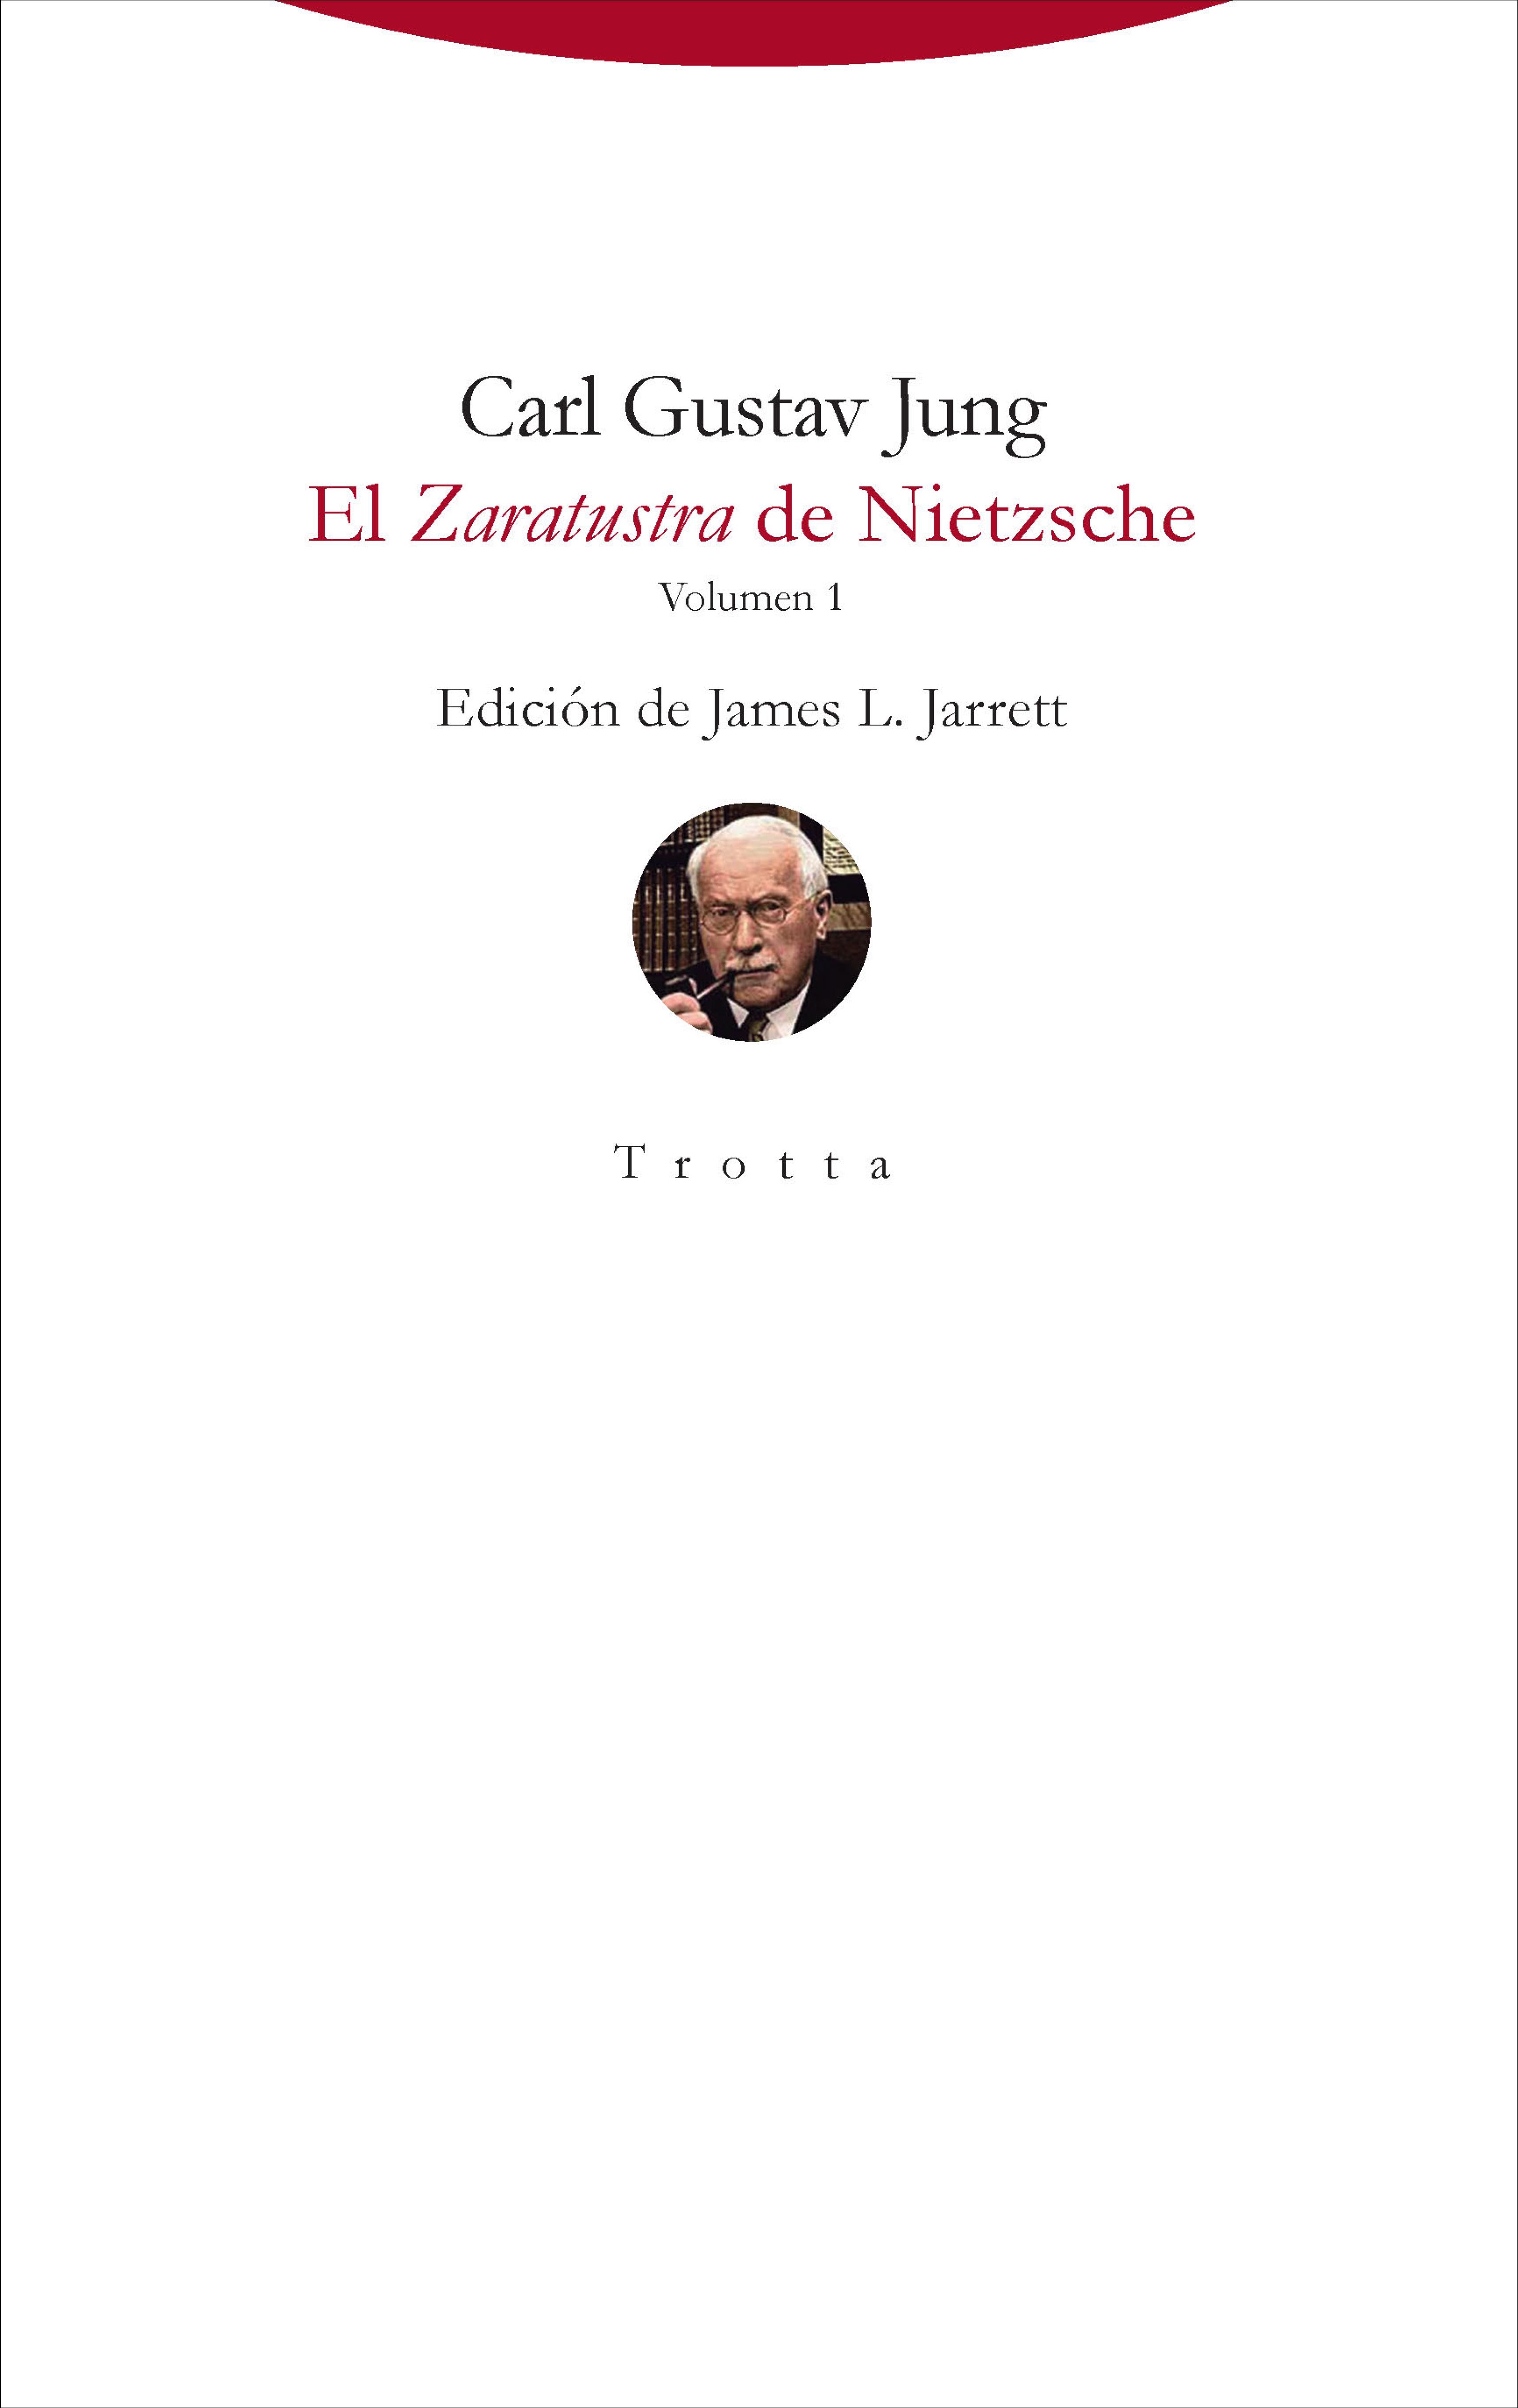 El Zaratustra de Nietzsche "Volumen 1"